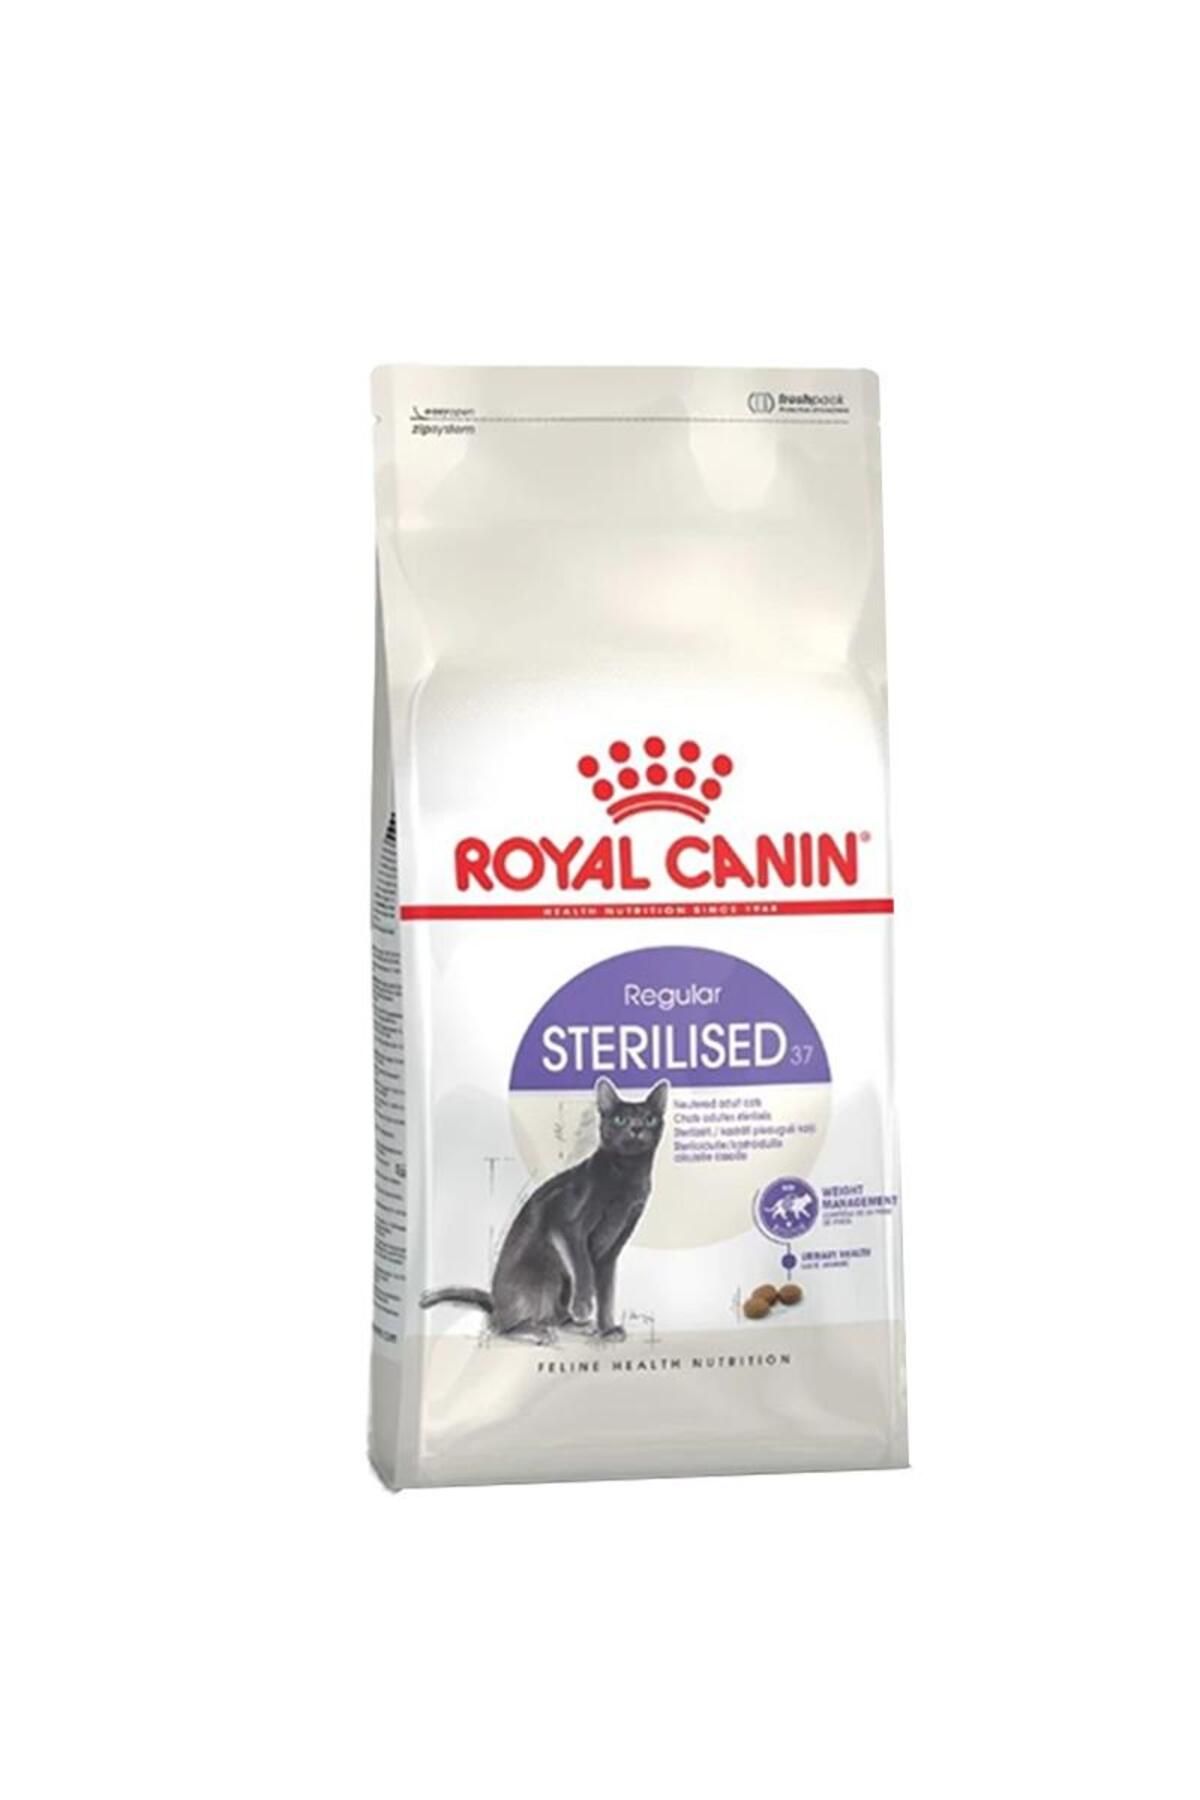 Royal Canin ® Sterilised 37 Kısırlaştırılmış Kedi Maması 10 Kg